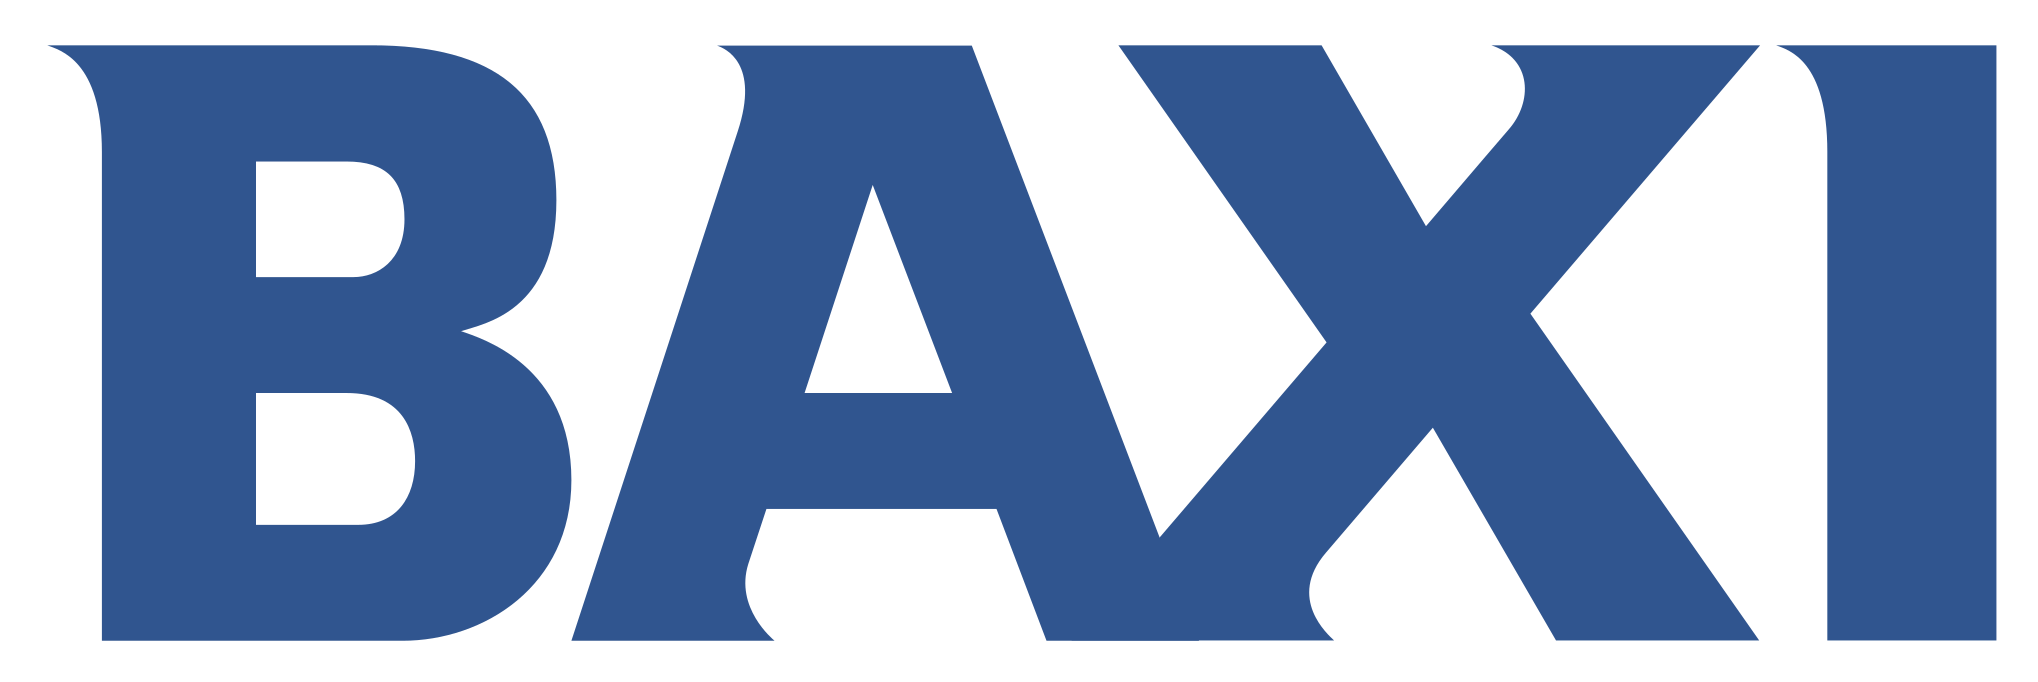 BAXI logotyp